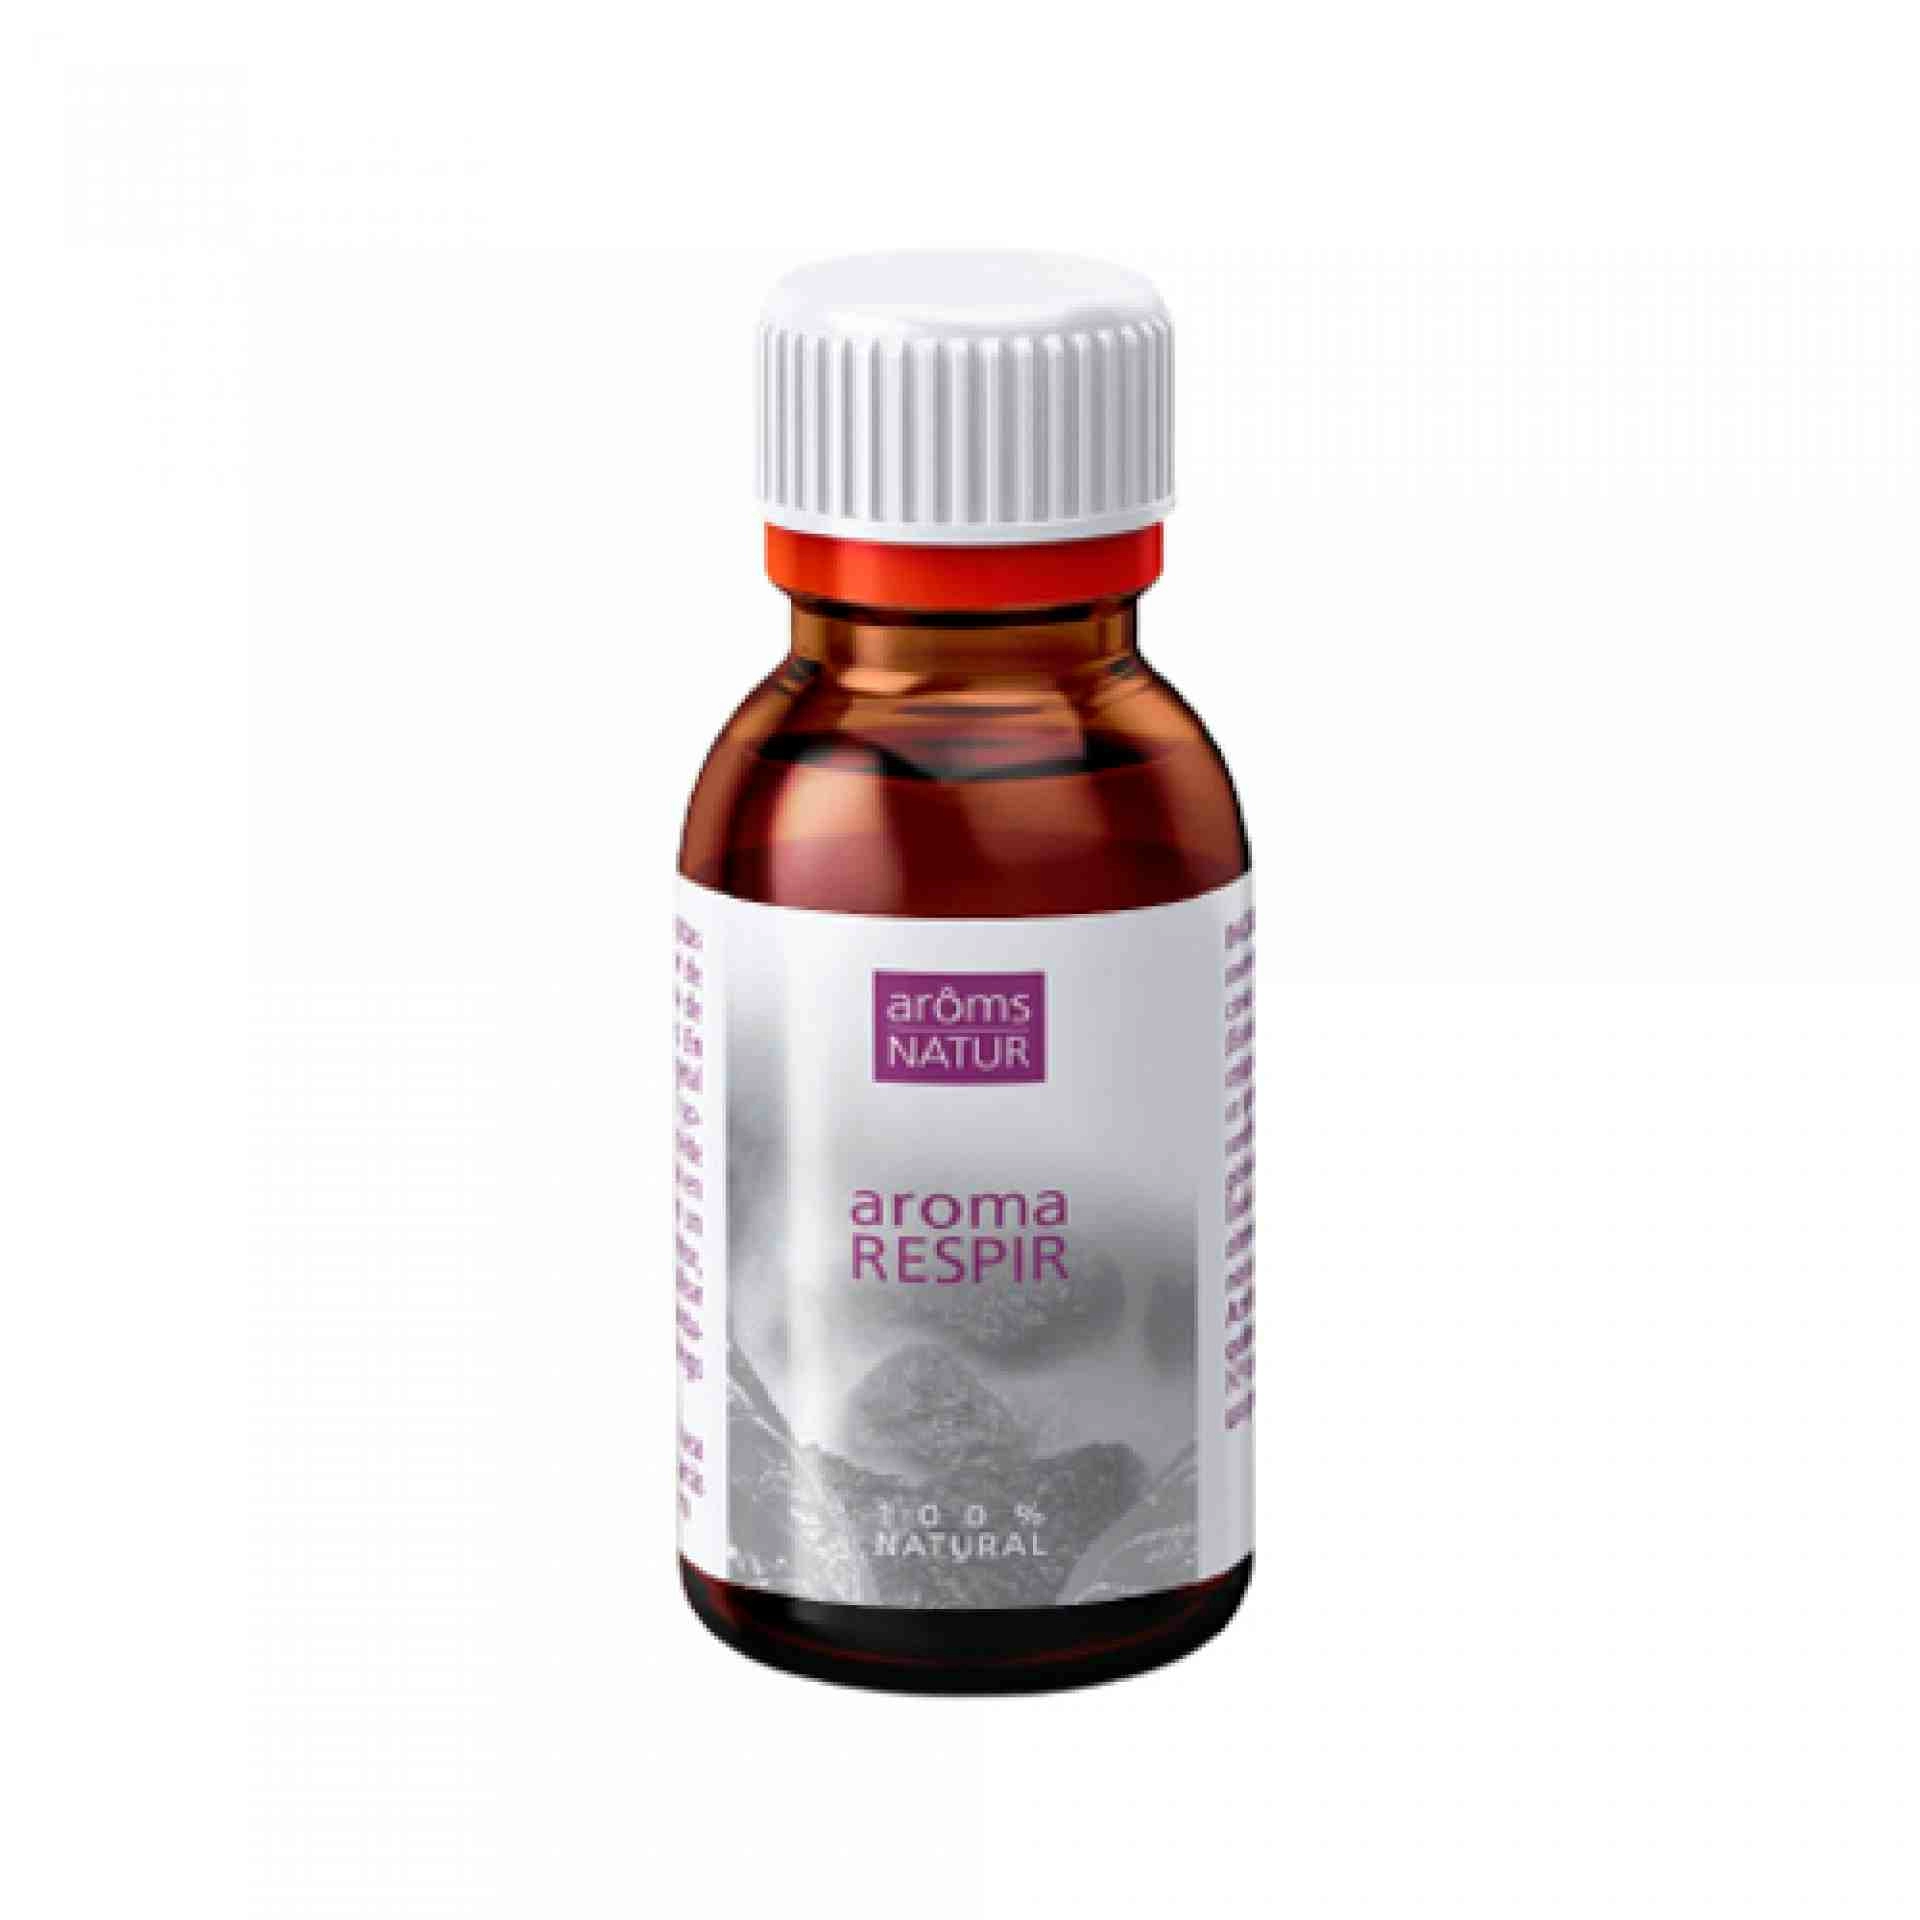 Aromarespir | Aceite esencial descongestionante 30ml - Arôms Natur ®